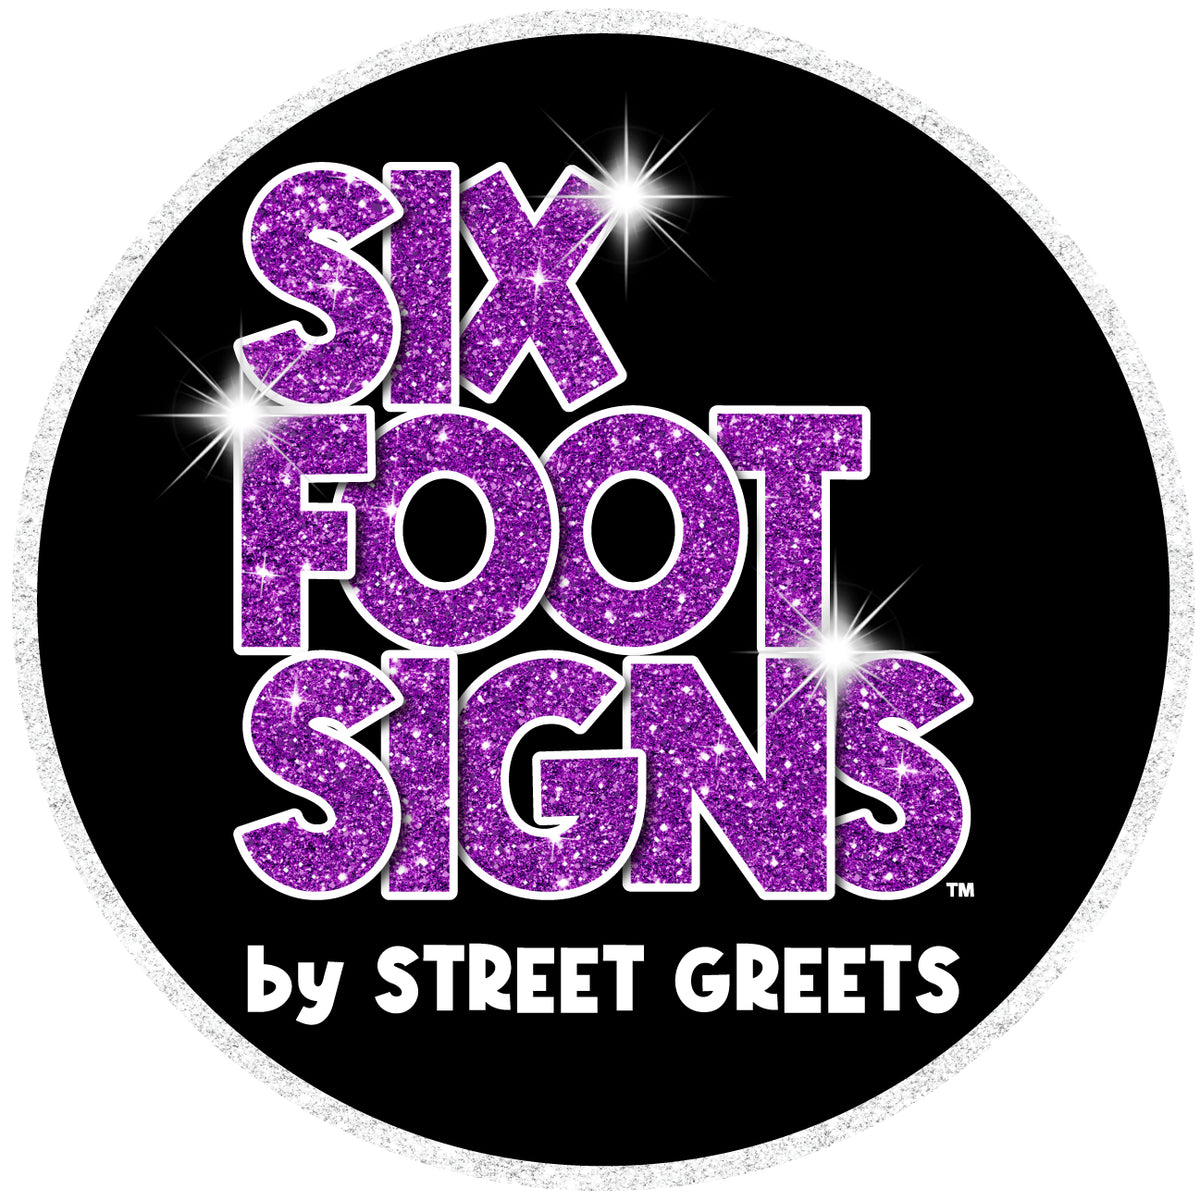 Street Greet's Braces - 4 Pack of 4 Foot Braces